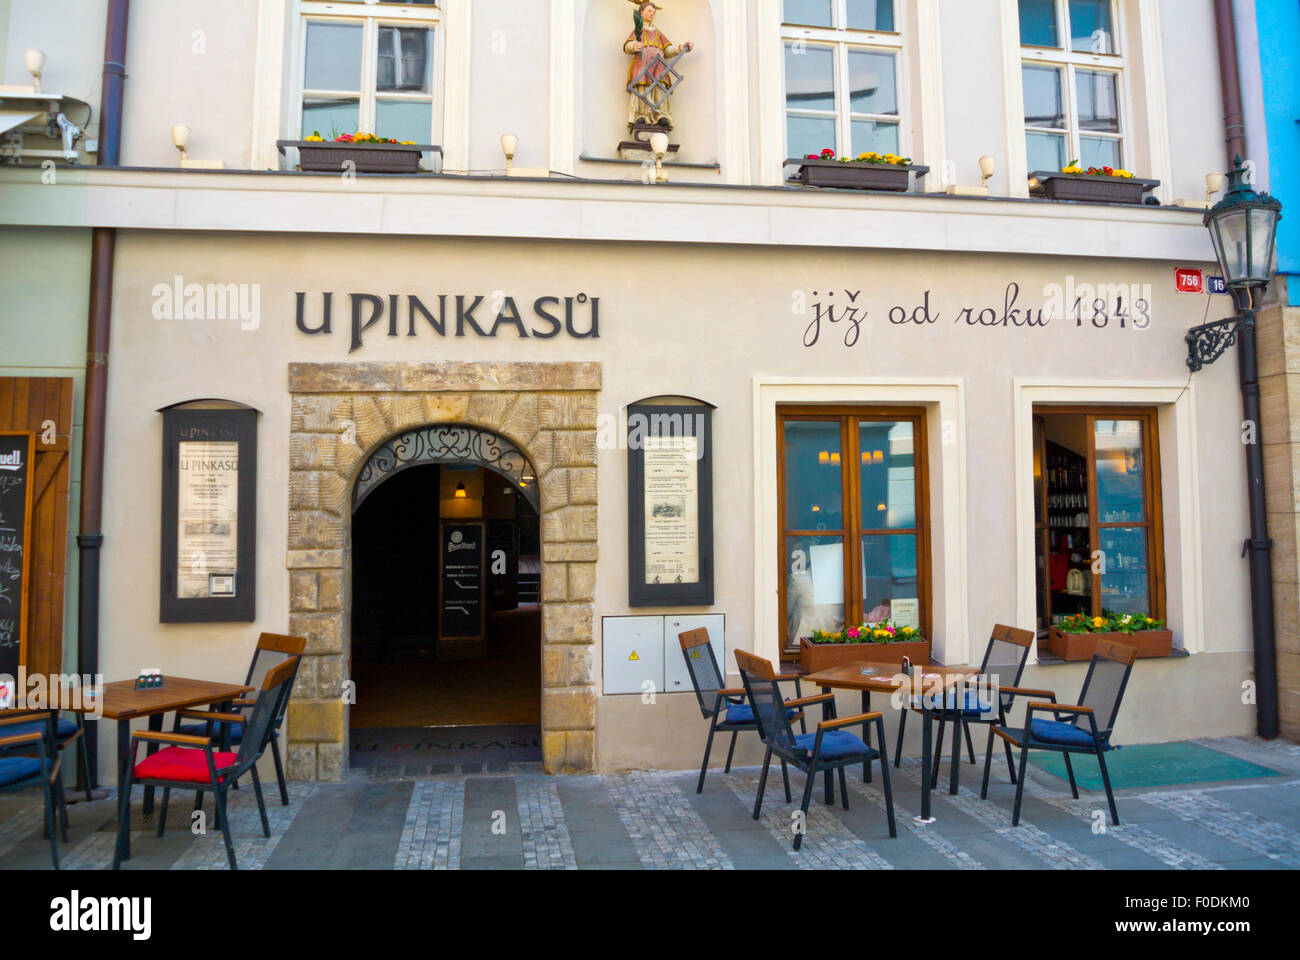 U Pinkasu, célèbre restaurant et bar, Jungmannova namesti, Prague, République Tchèque, Europe Banque D'Images